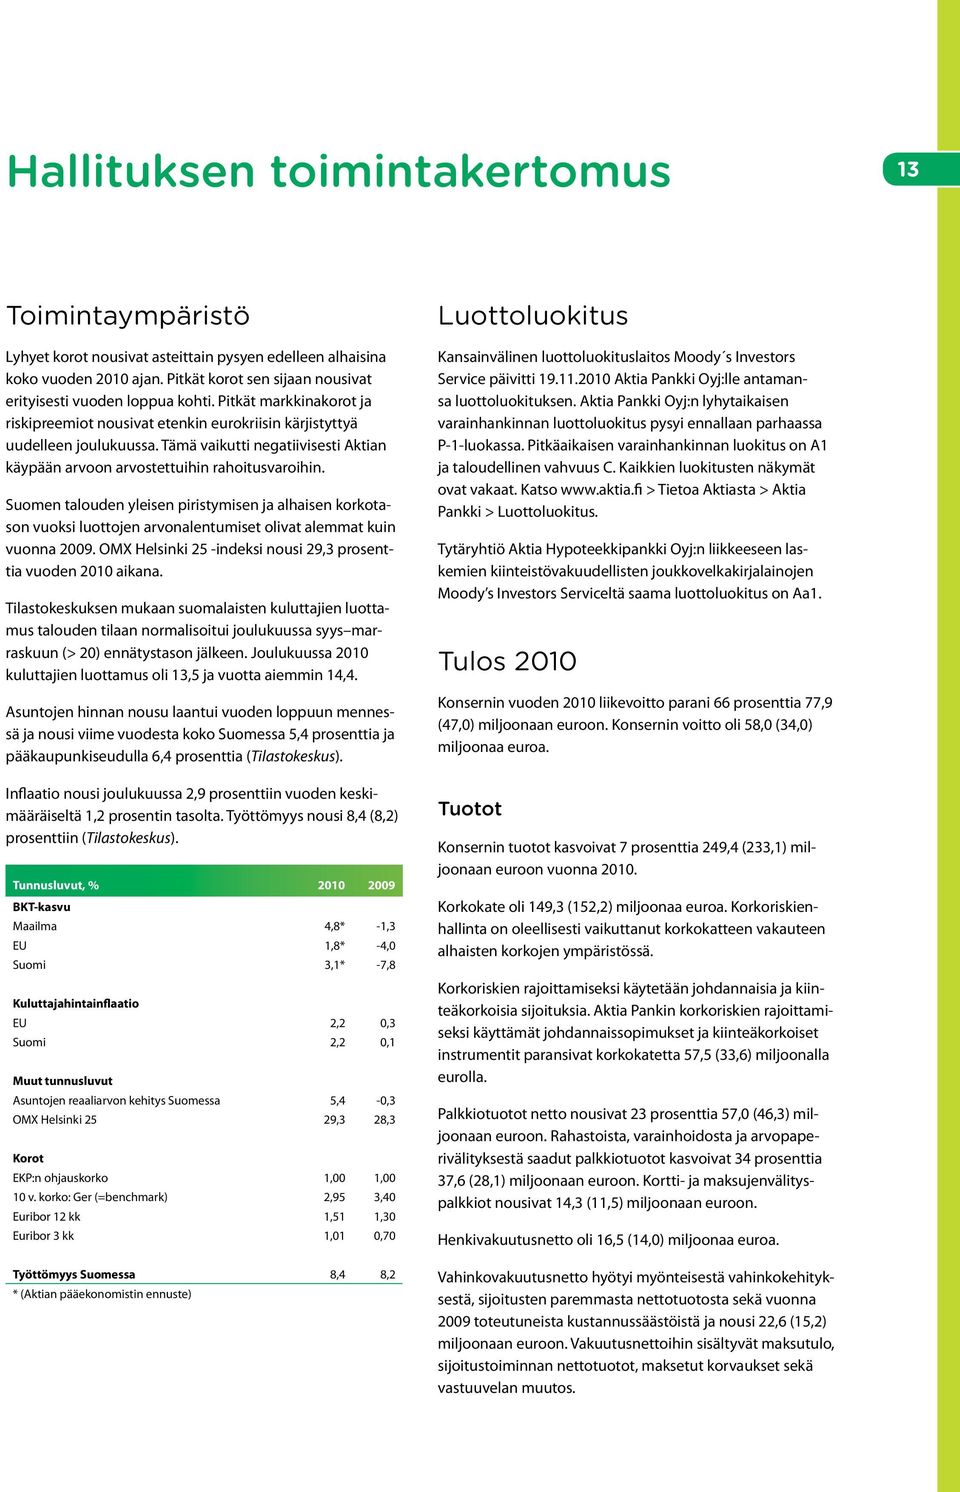 Suomen talouden yleisen piristymisen ja alhaisen korkotason vuoksi luottojen arvonalentumiset olivat alemmat kuin vuonna 2009. OMX Helsinki 25 -indeksi nousi 29,3 prosenttia vuoden 2010 aikana.